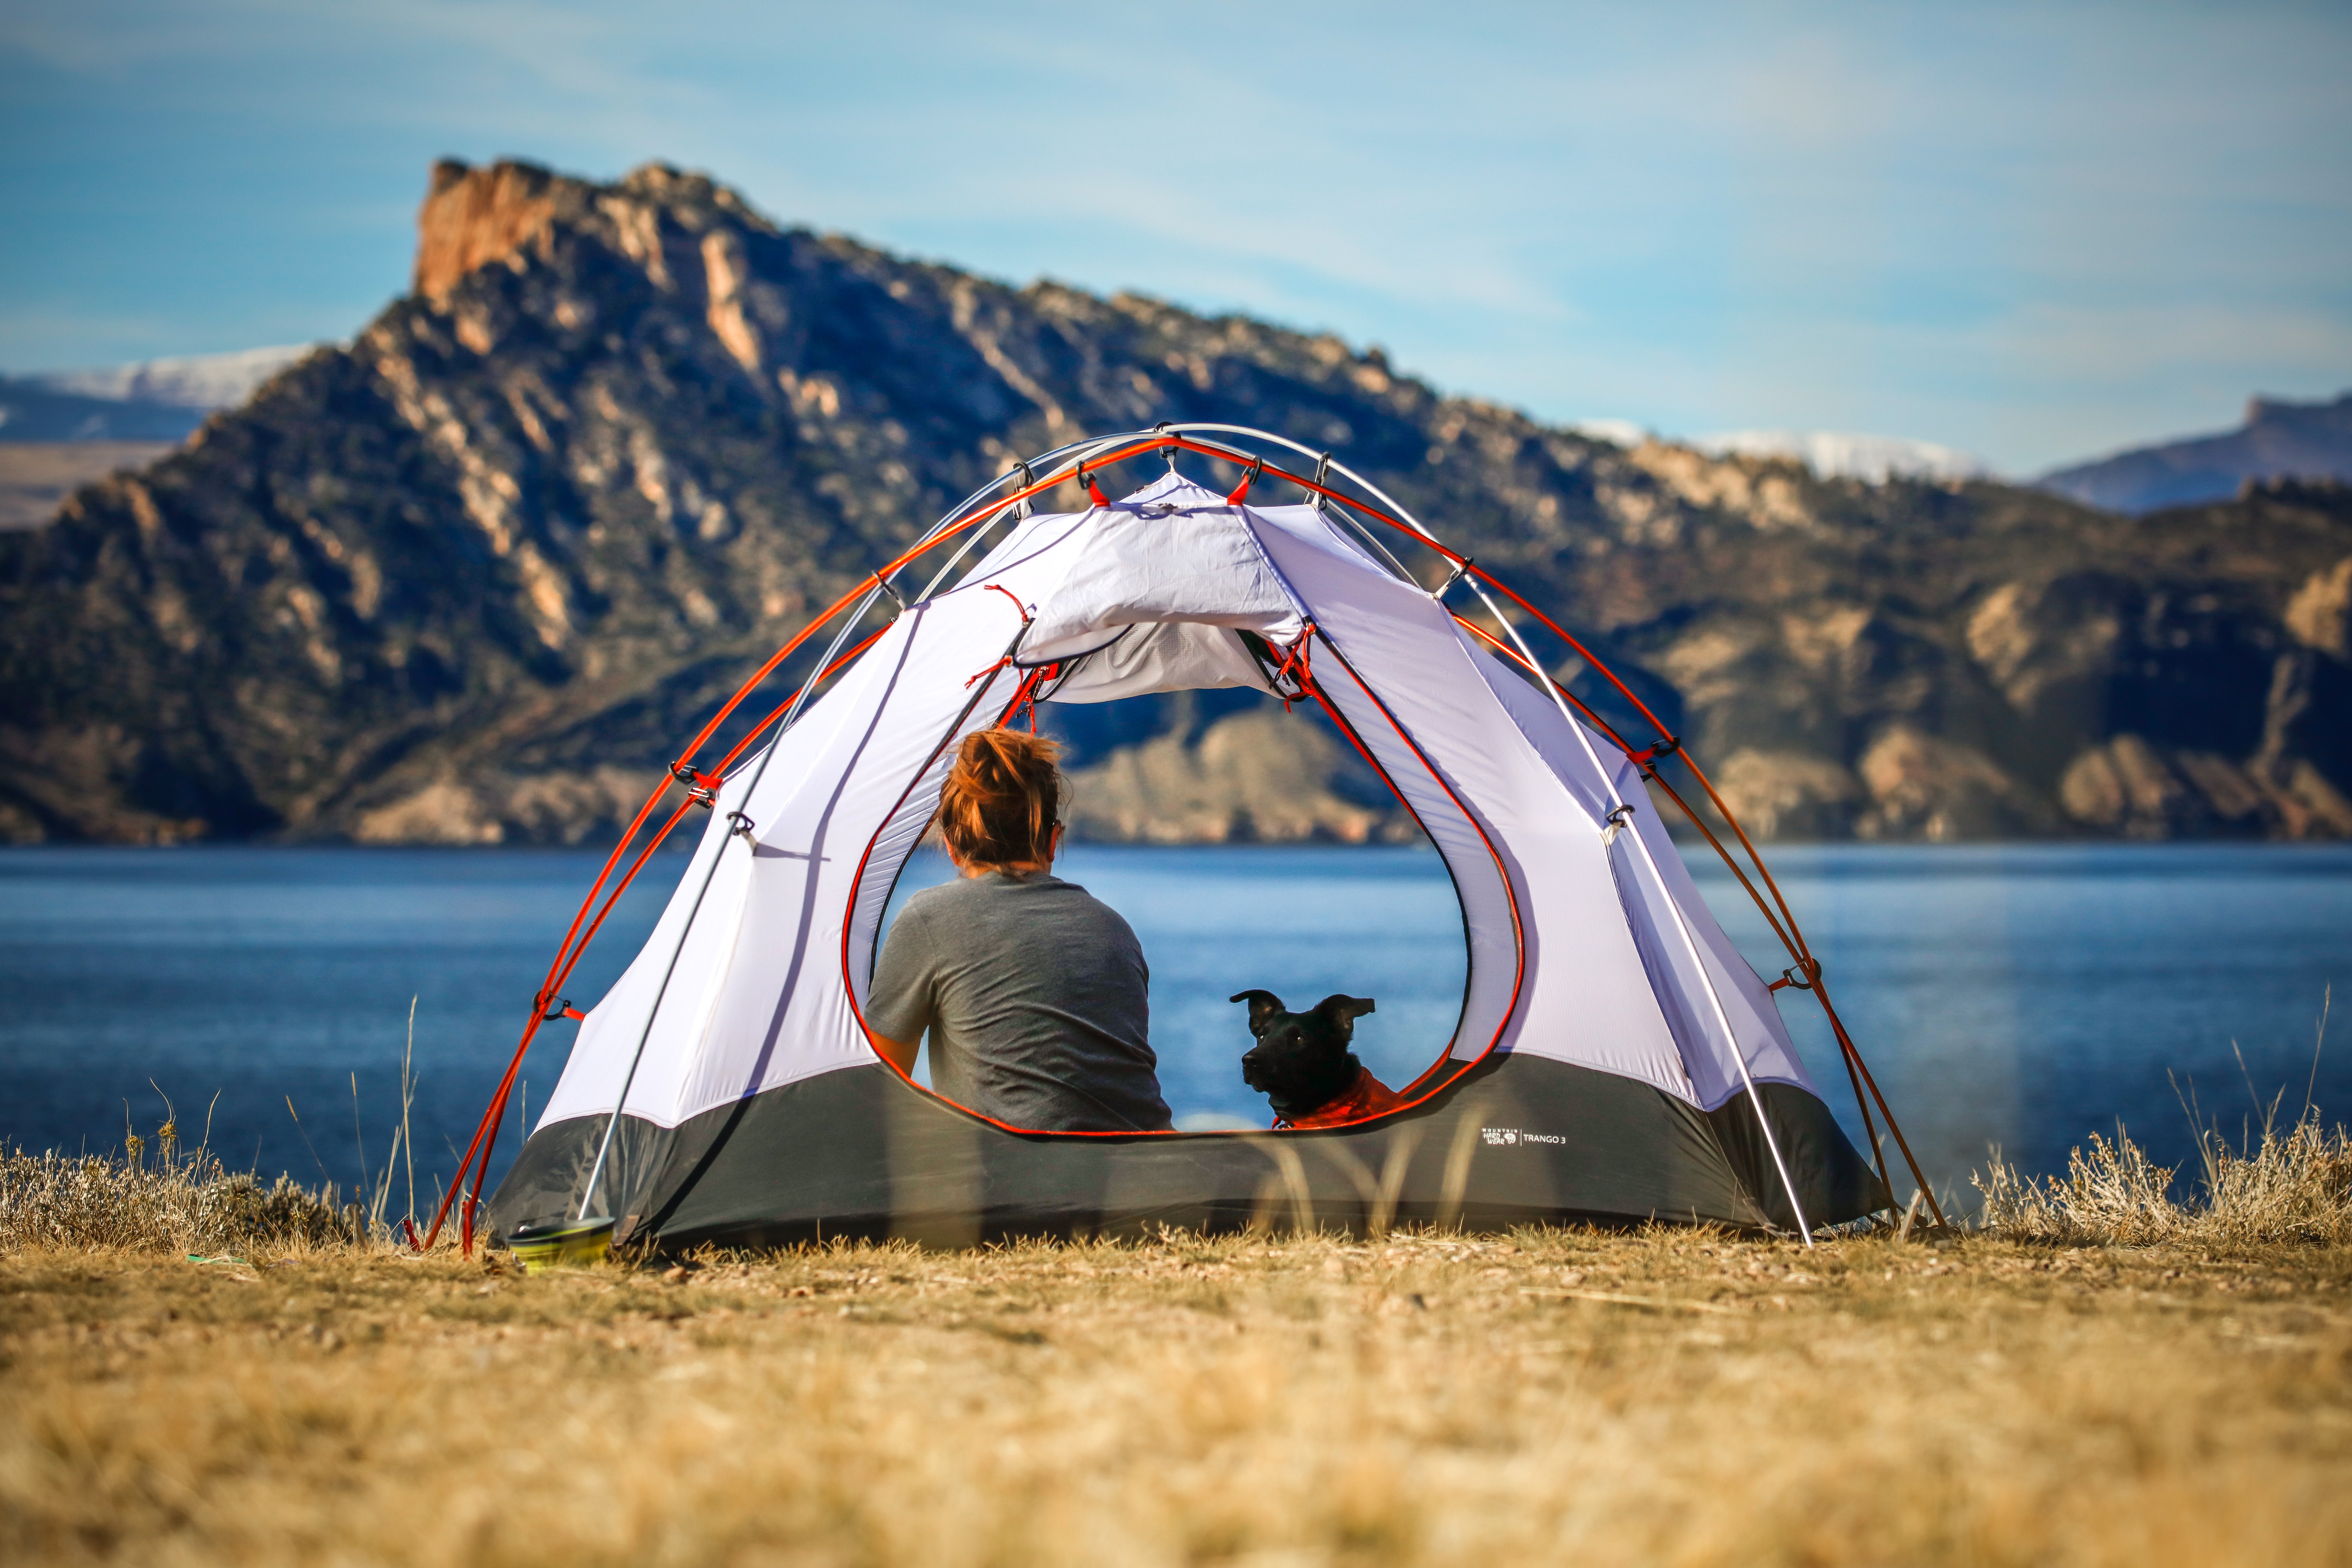 When we go camping. Палатка туристическая. Палатка на природе. Поход с палатками. Отдых с палатками.